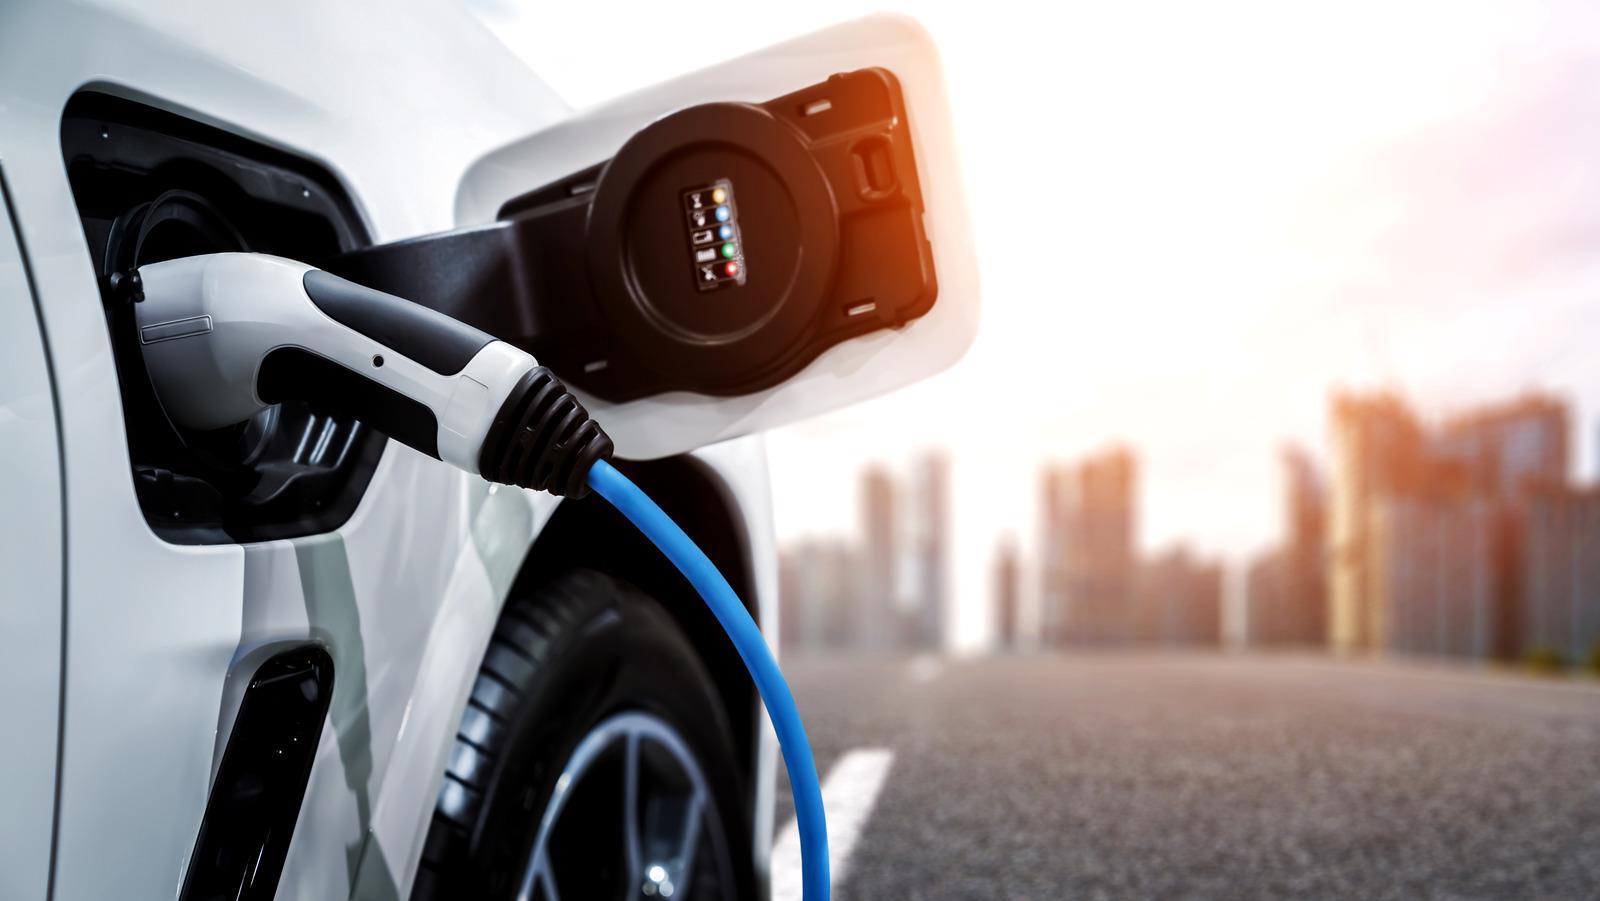 2022-30年全球電動汽車充電電纜年復合增29%